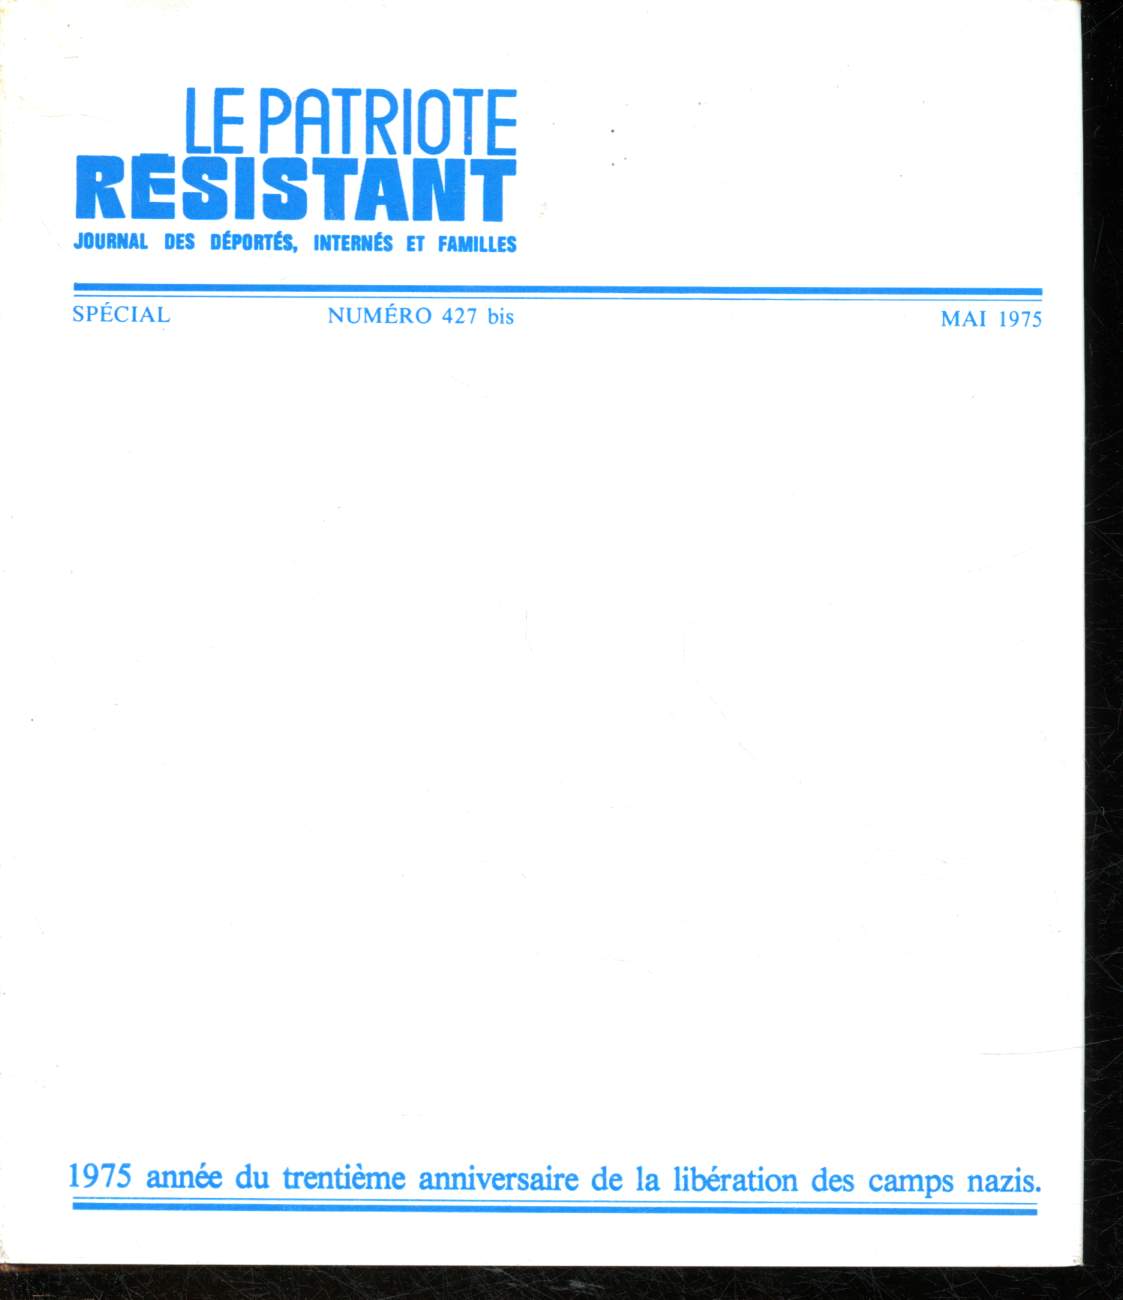 Patriote rsistant n427 bis - Mai 1975 : Les techniciens de la mort